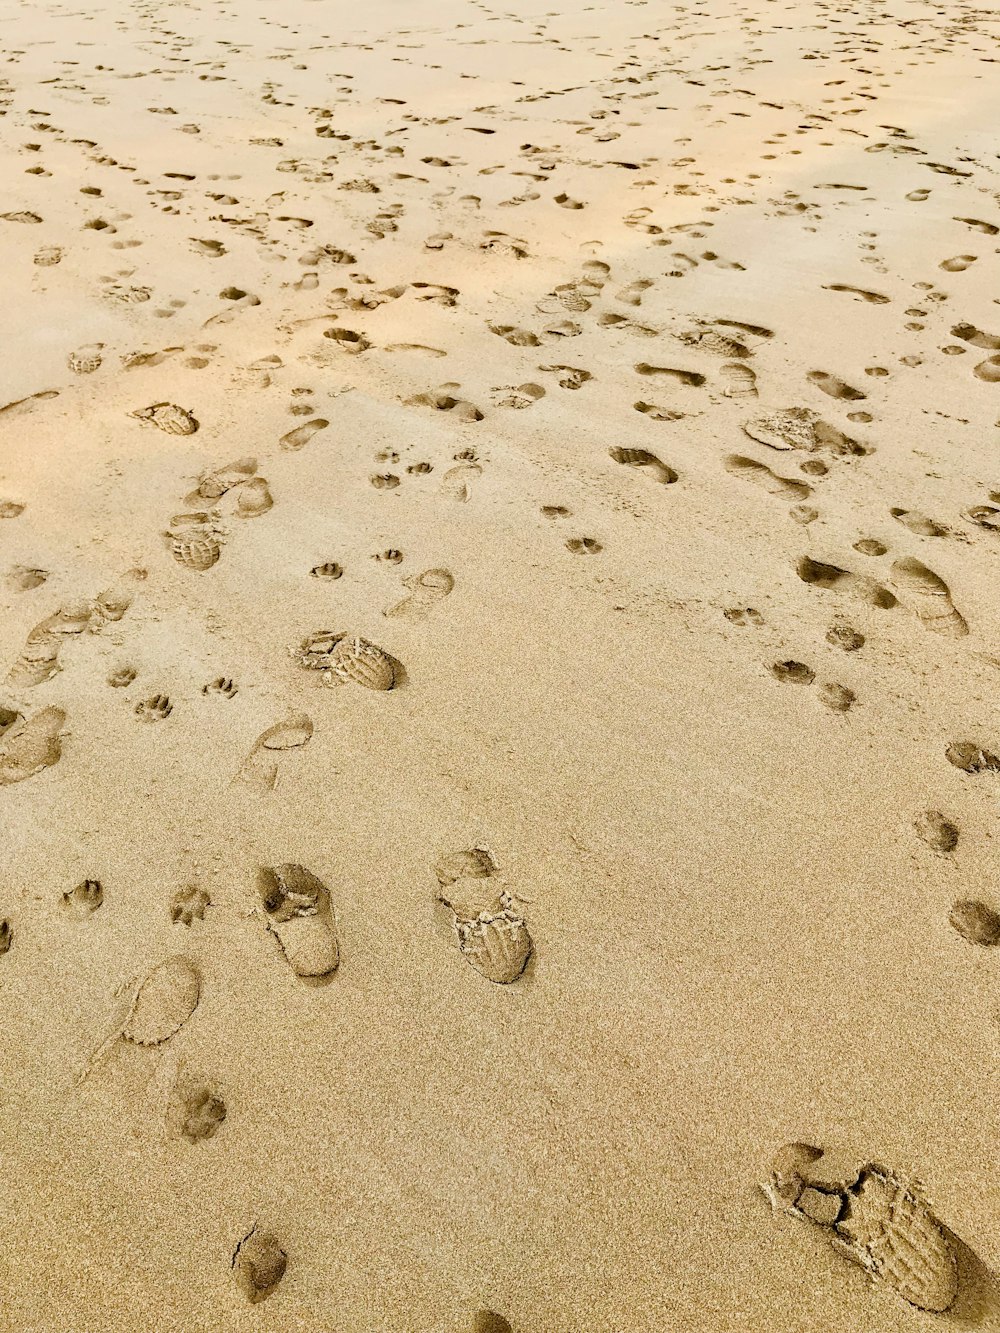 많은 발자국으로 덮인 모래 해변